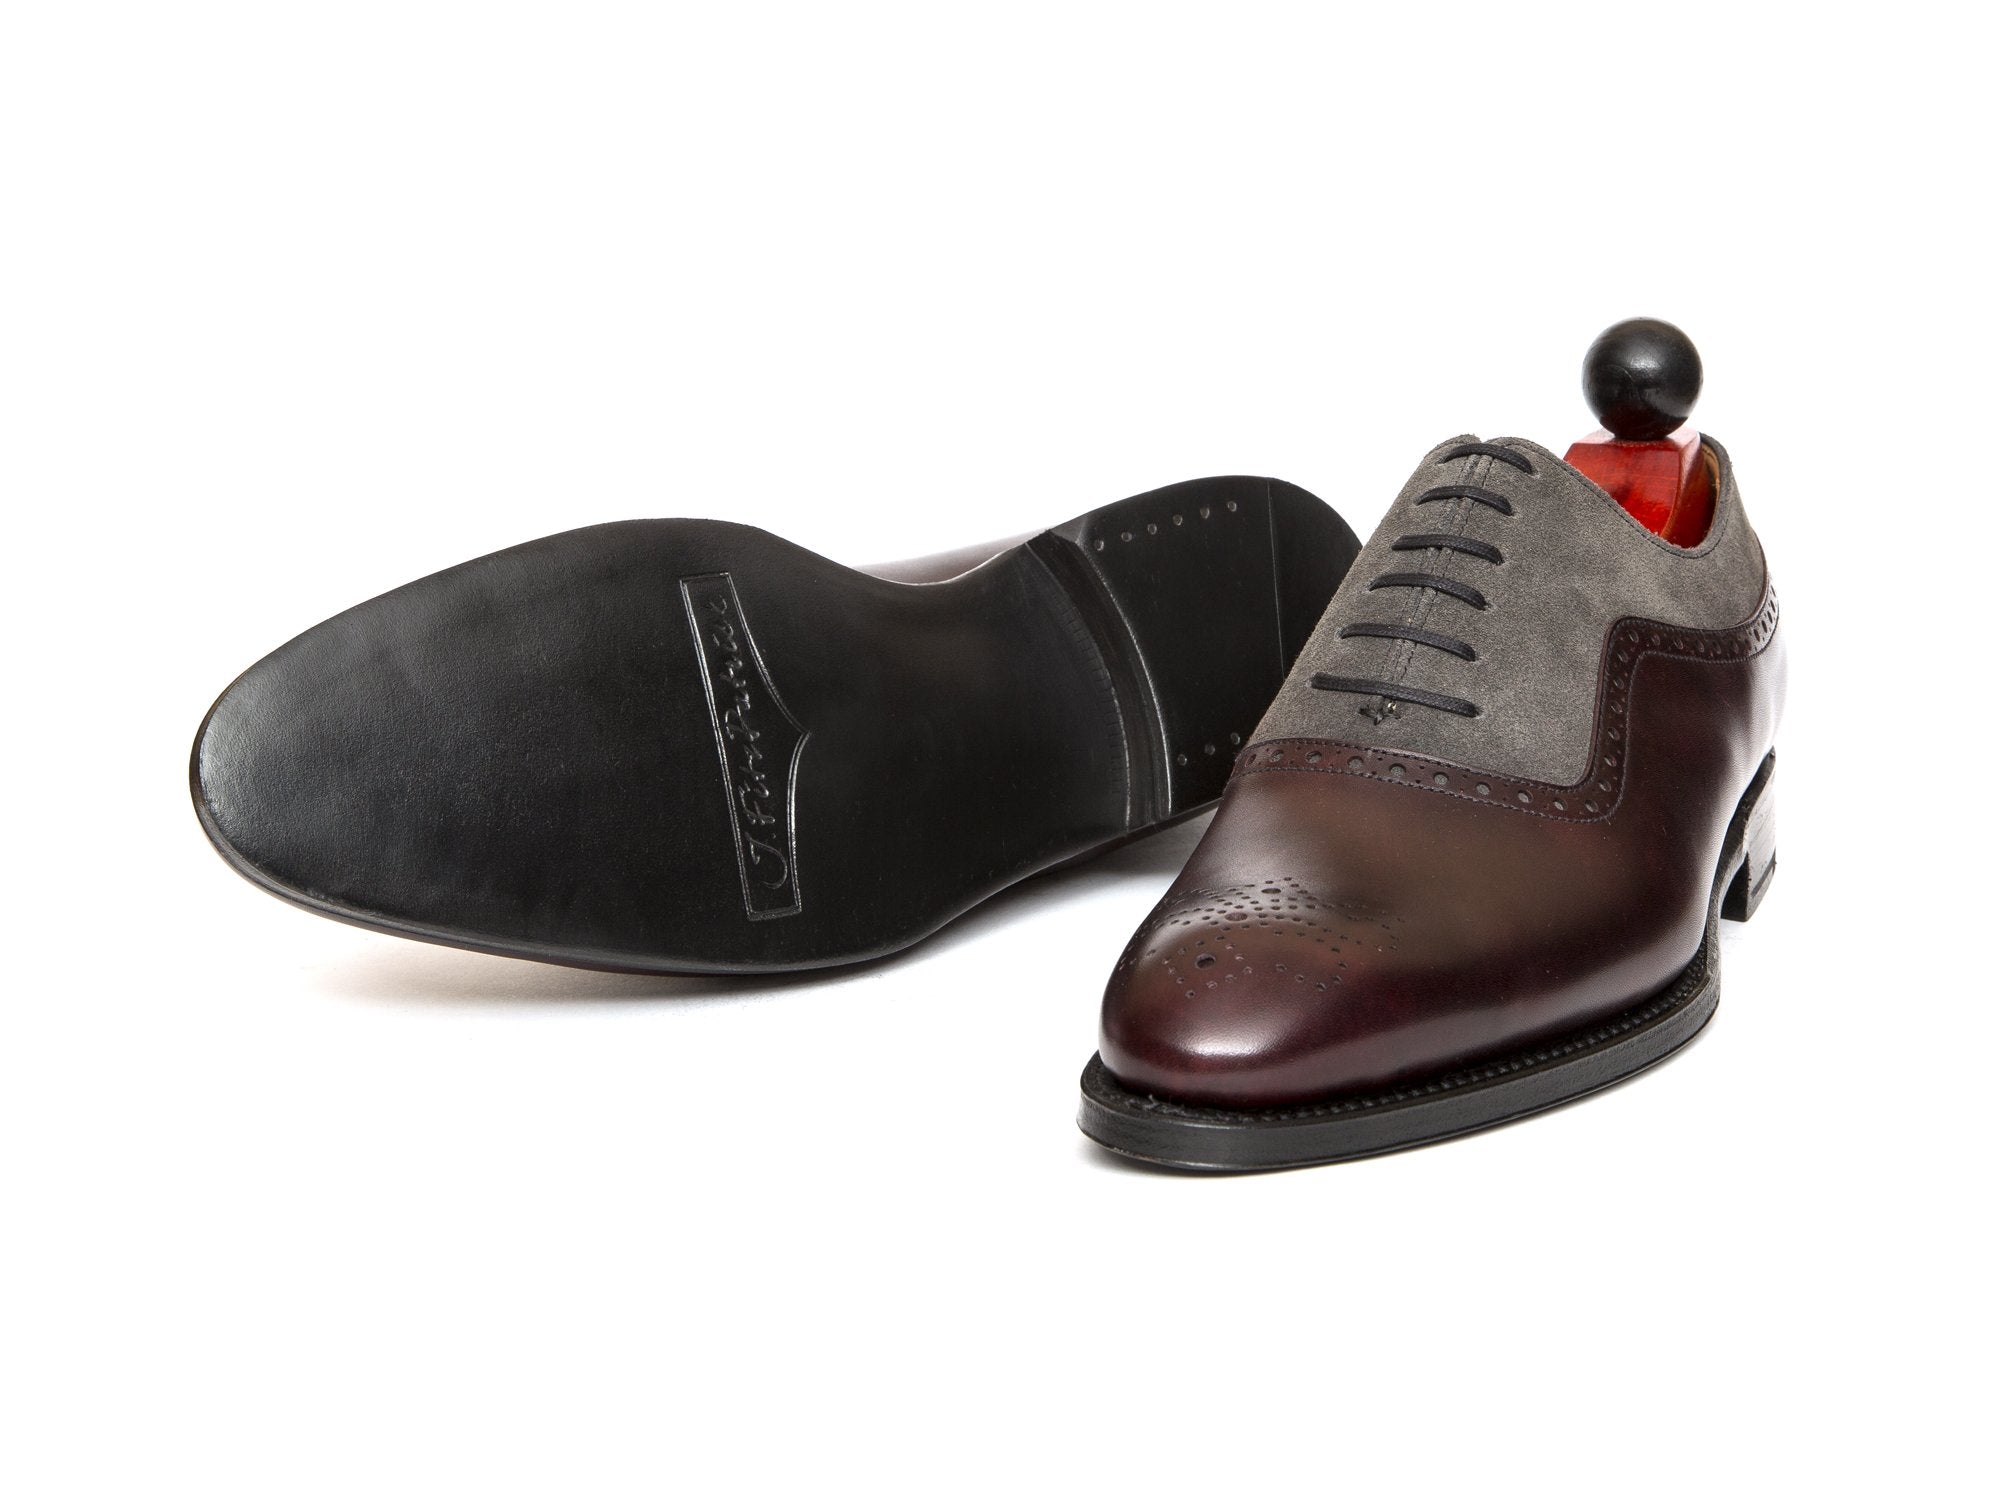 J.FitzPatrick Footwear - Roosevelt - Plum Museum / Mid Grey Suede - NGT Last